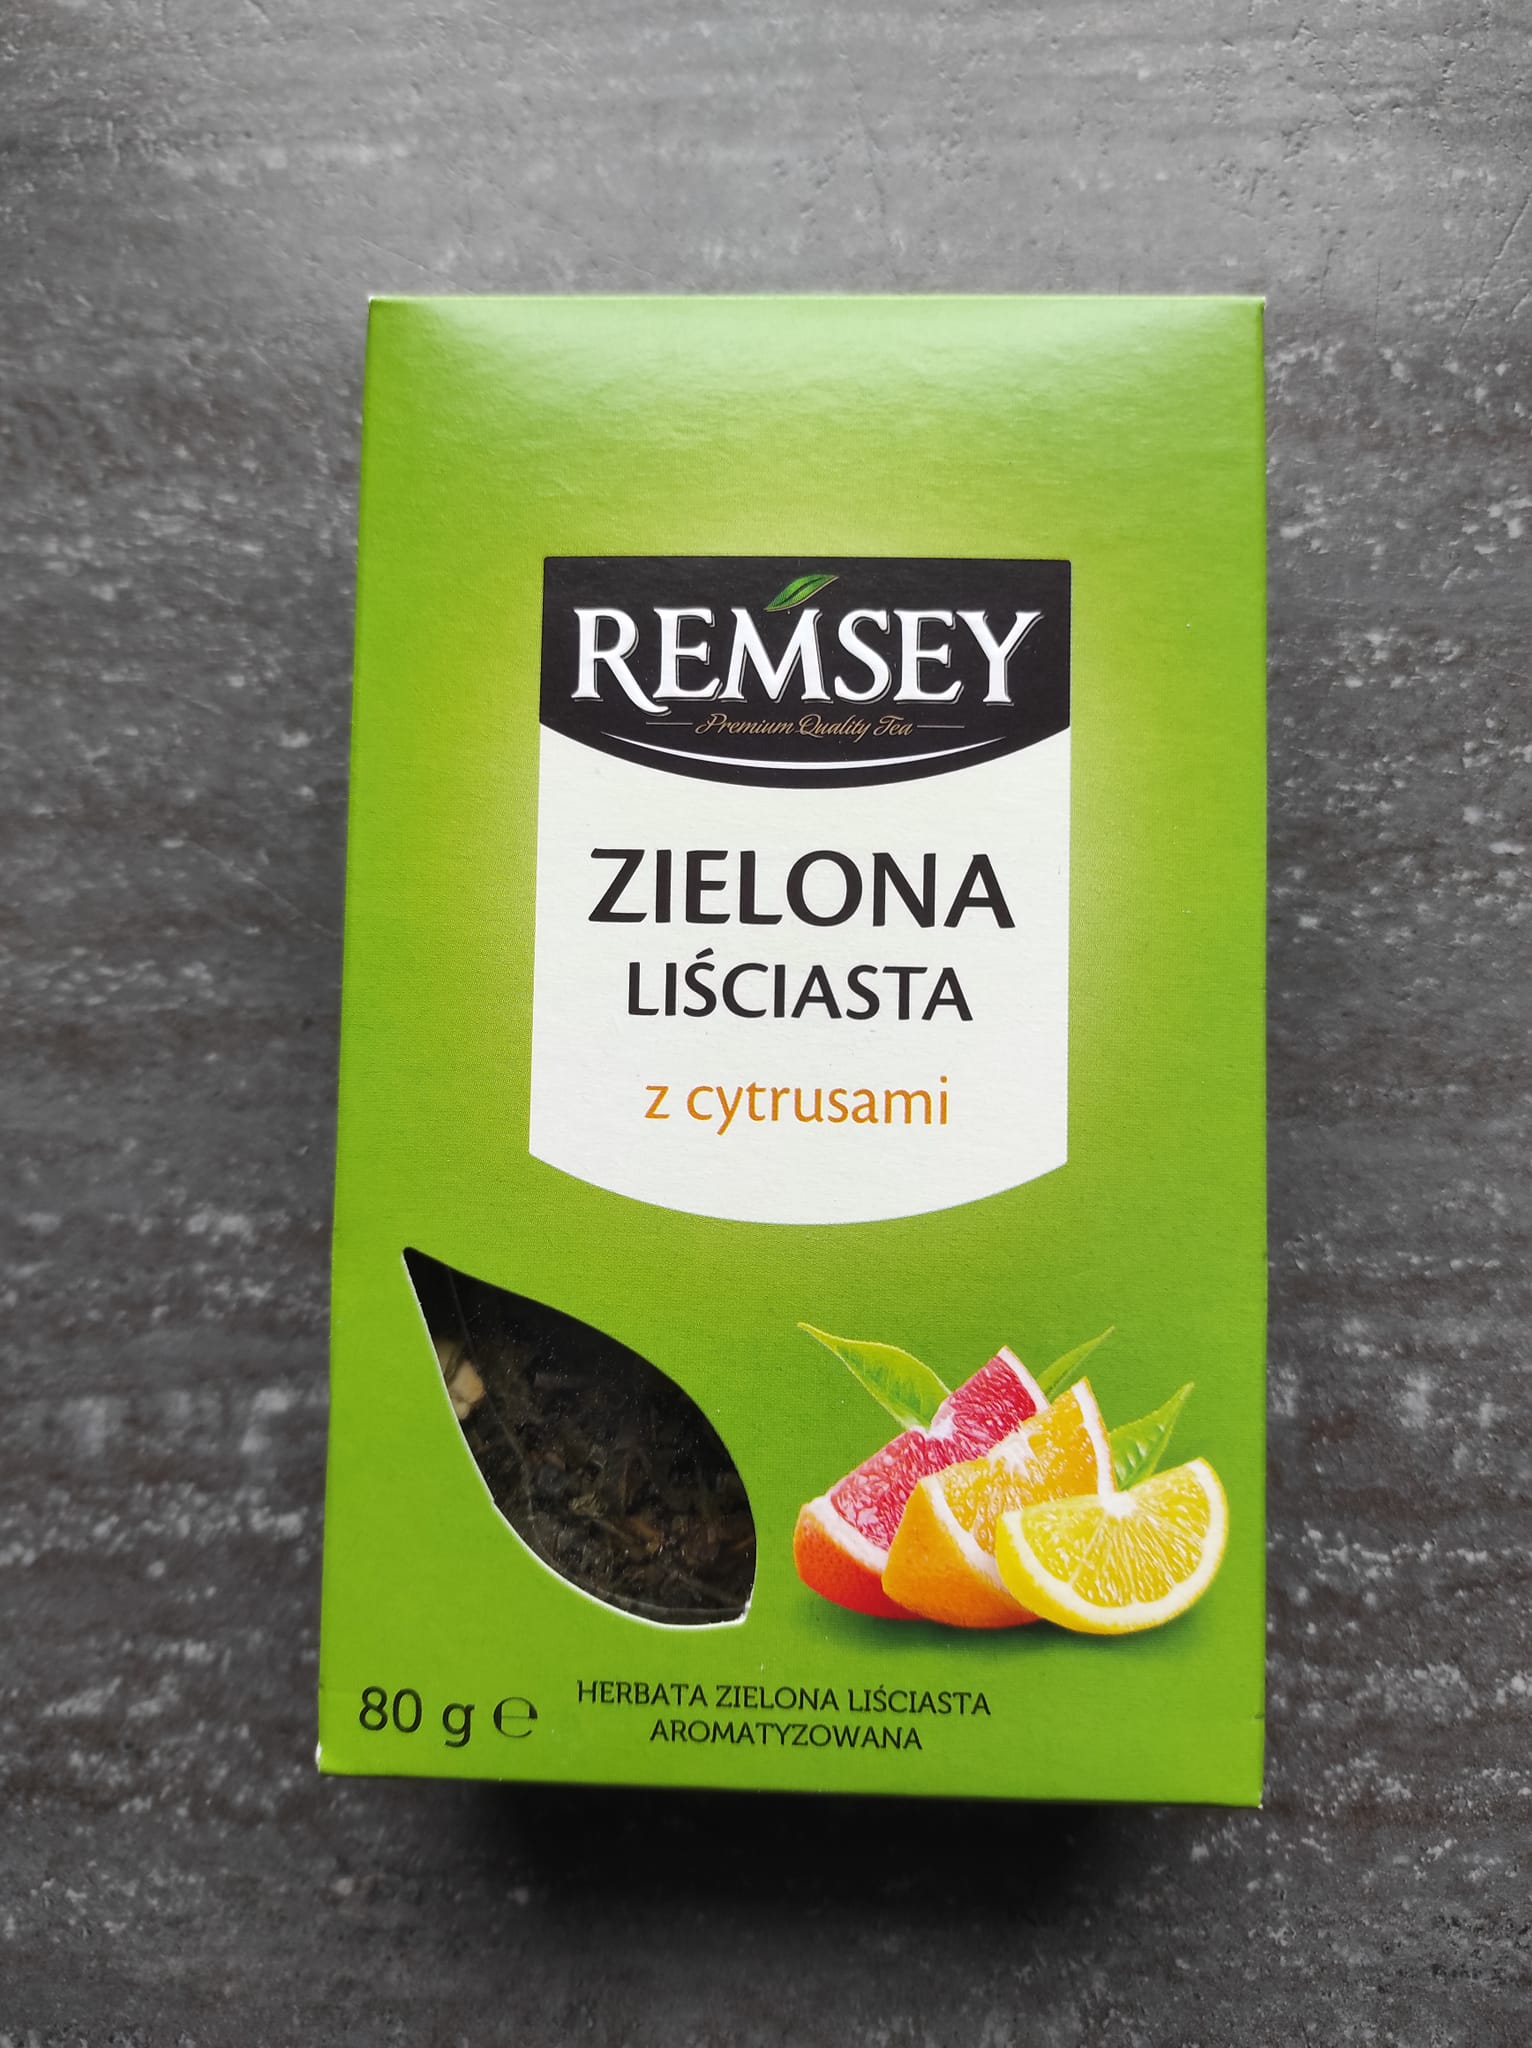 Herbata zielona liściasta z cytrusami – Remsey 5 (1)